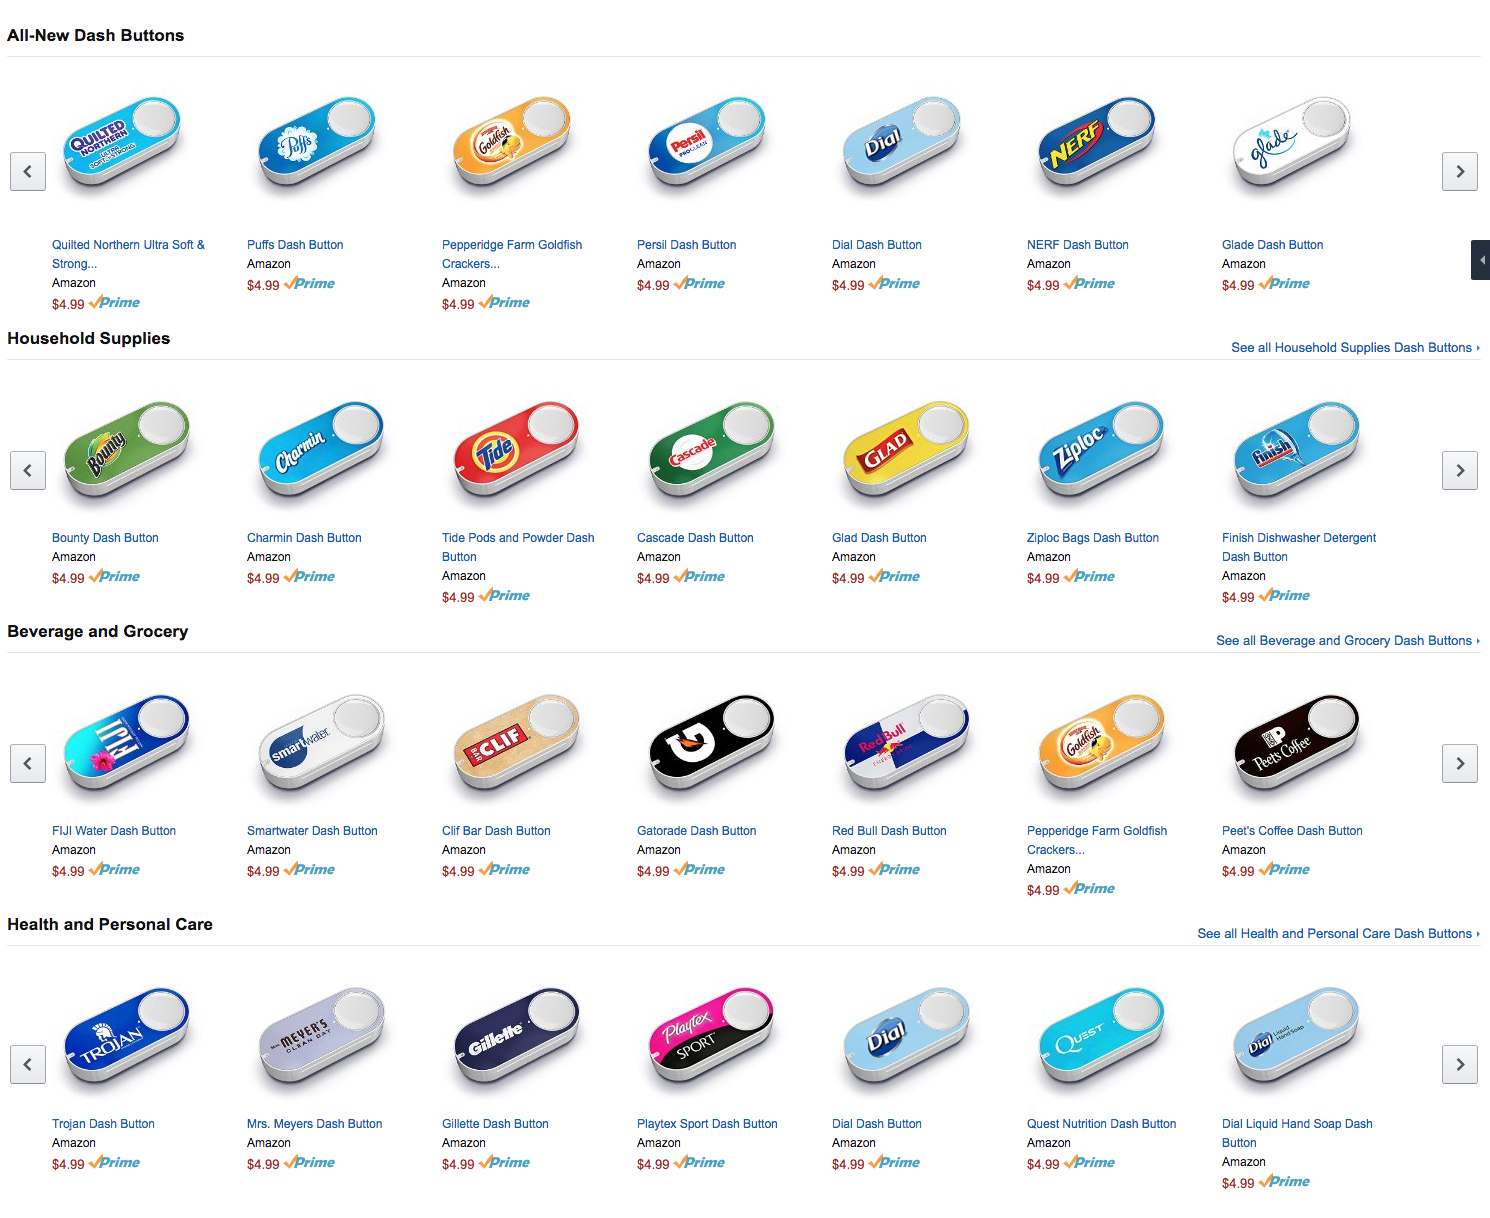 A sample of the Amazon Dash Button selection.